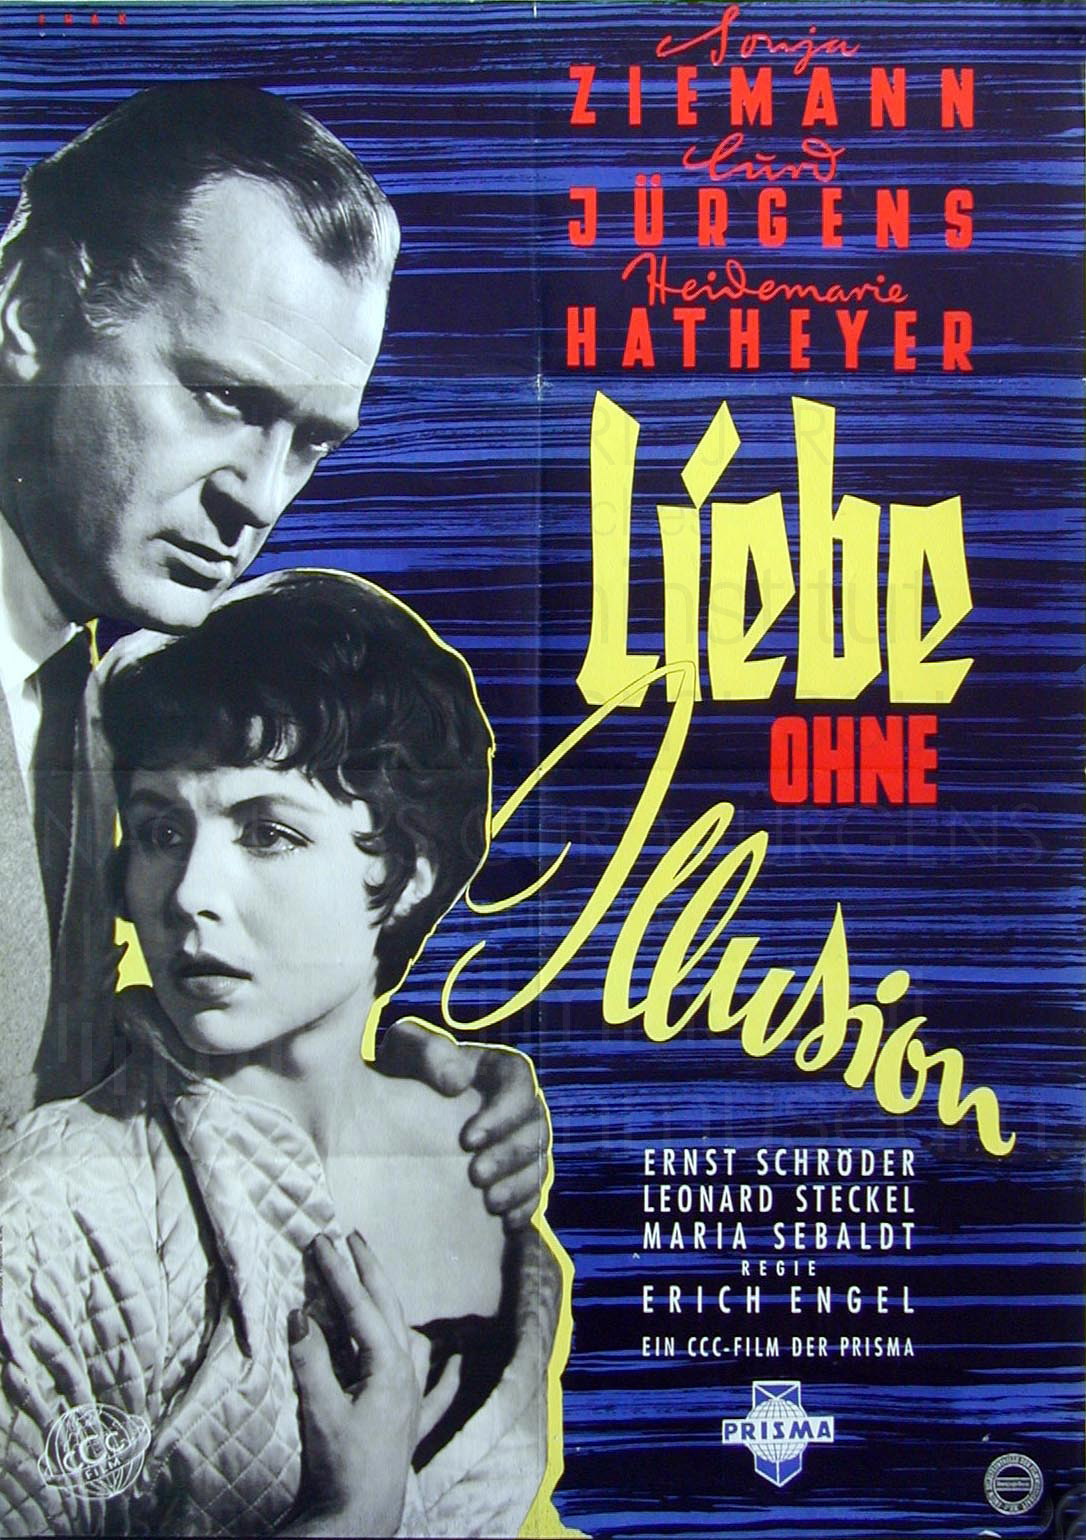 LIEBE OHNE ILLUSION (1955)